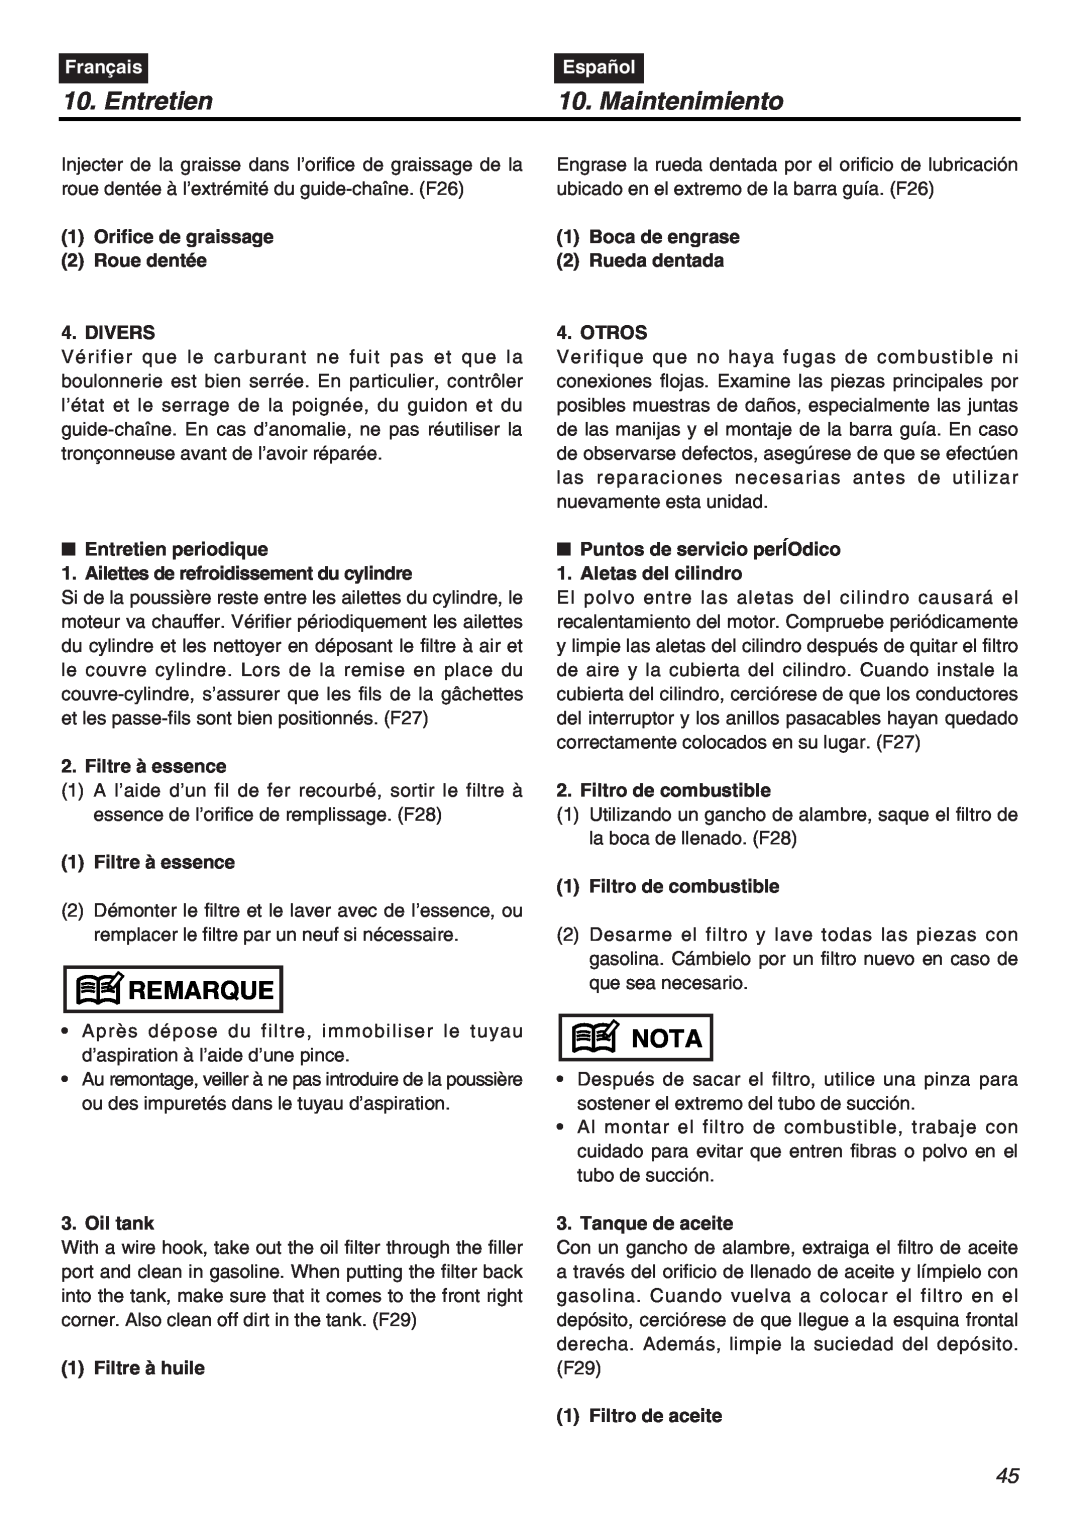 RedMax G5000AVS manual Entretien, Maintenimiento, Remarque, Nota, Français, Español 